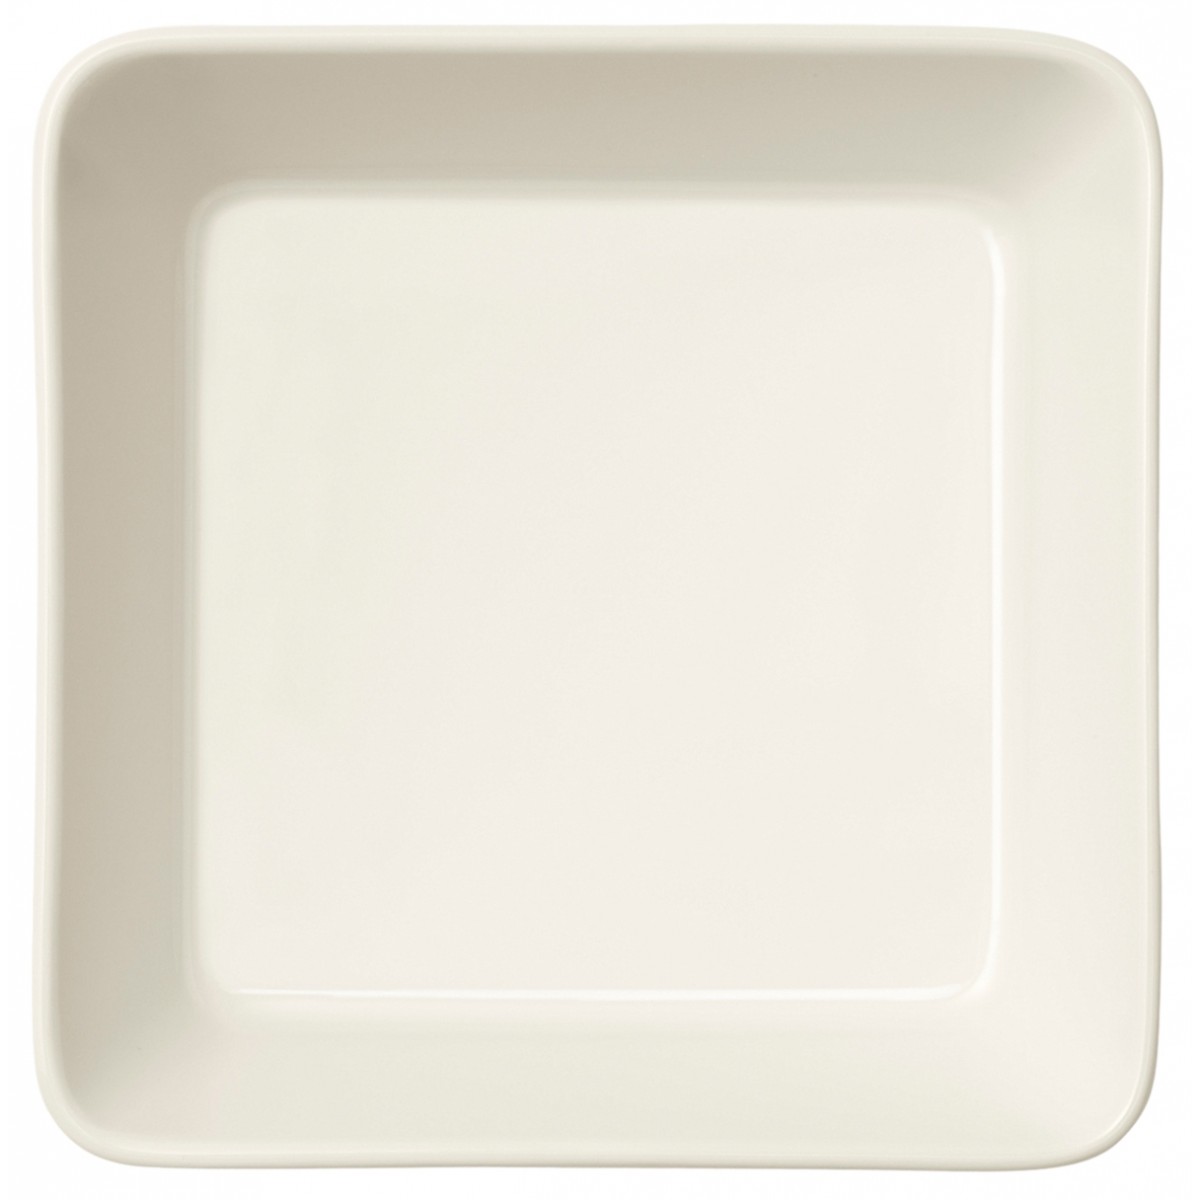 16x16cm - assiette carrée Teema blanche - 1005929